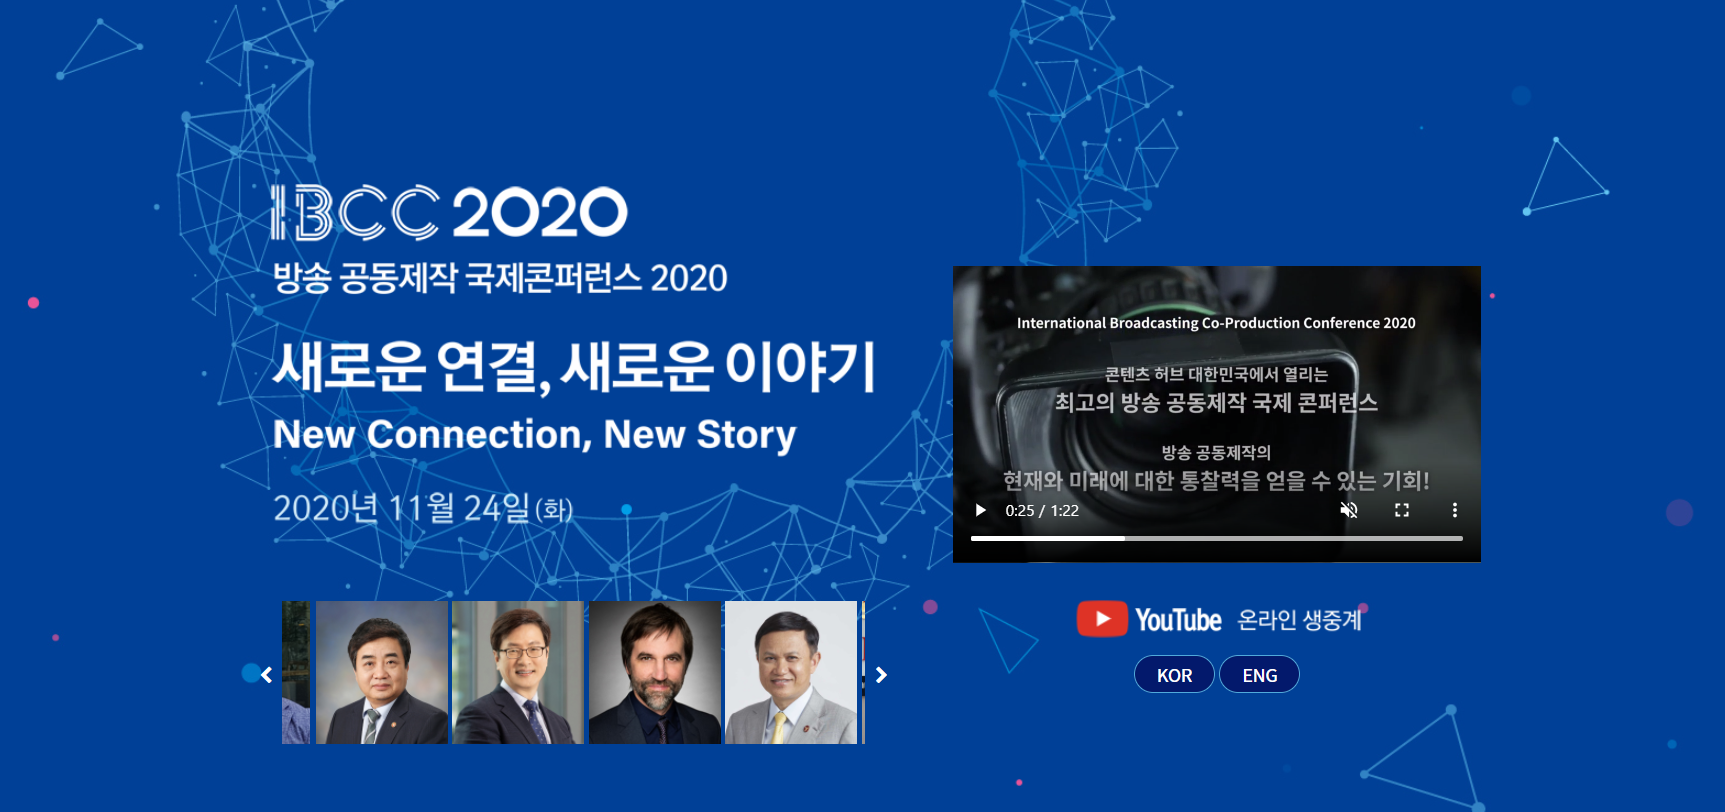 2020 방송 공동제작 국제 콘퍼런스